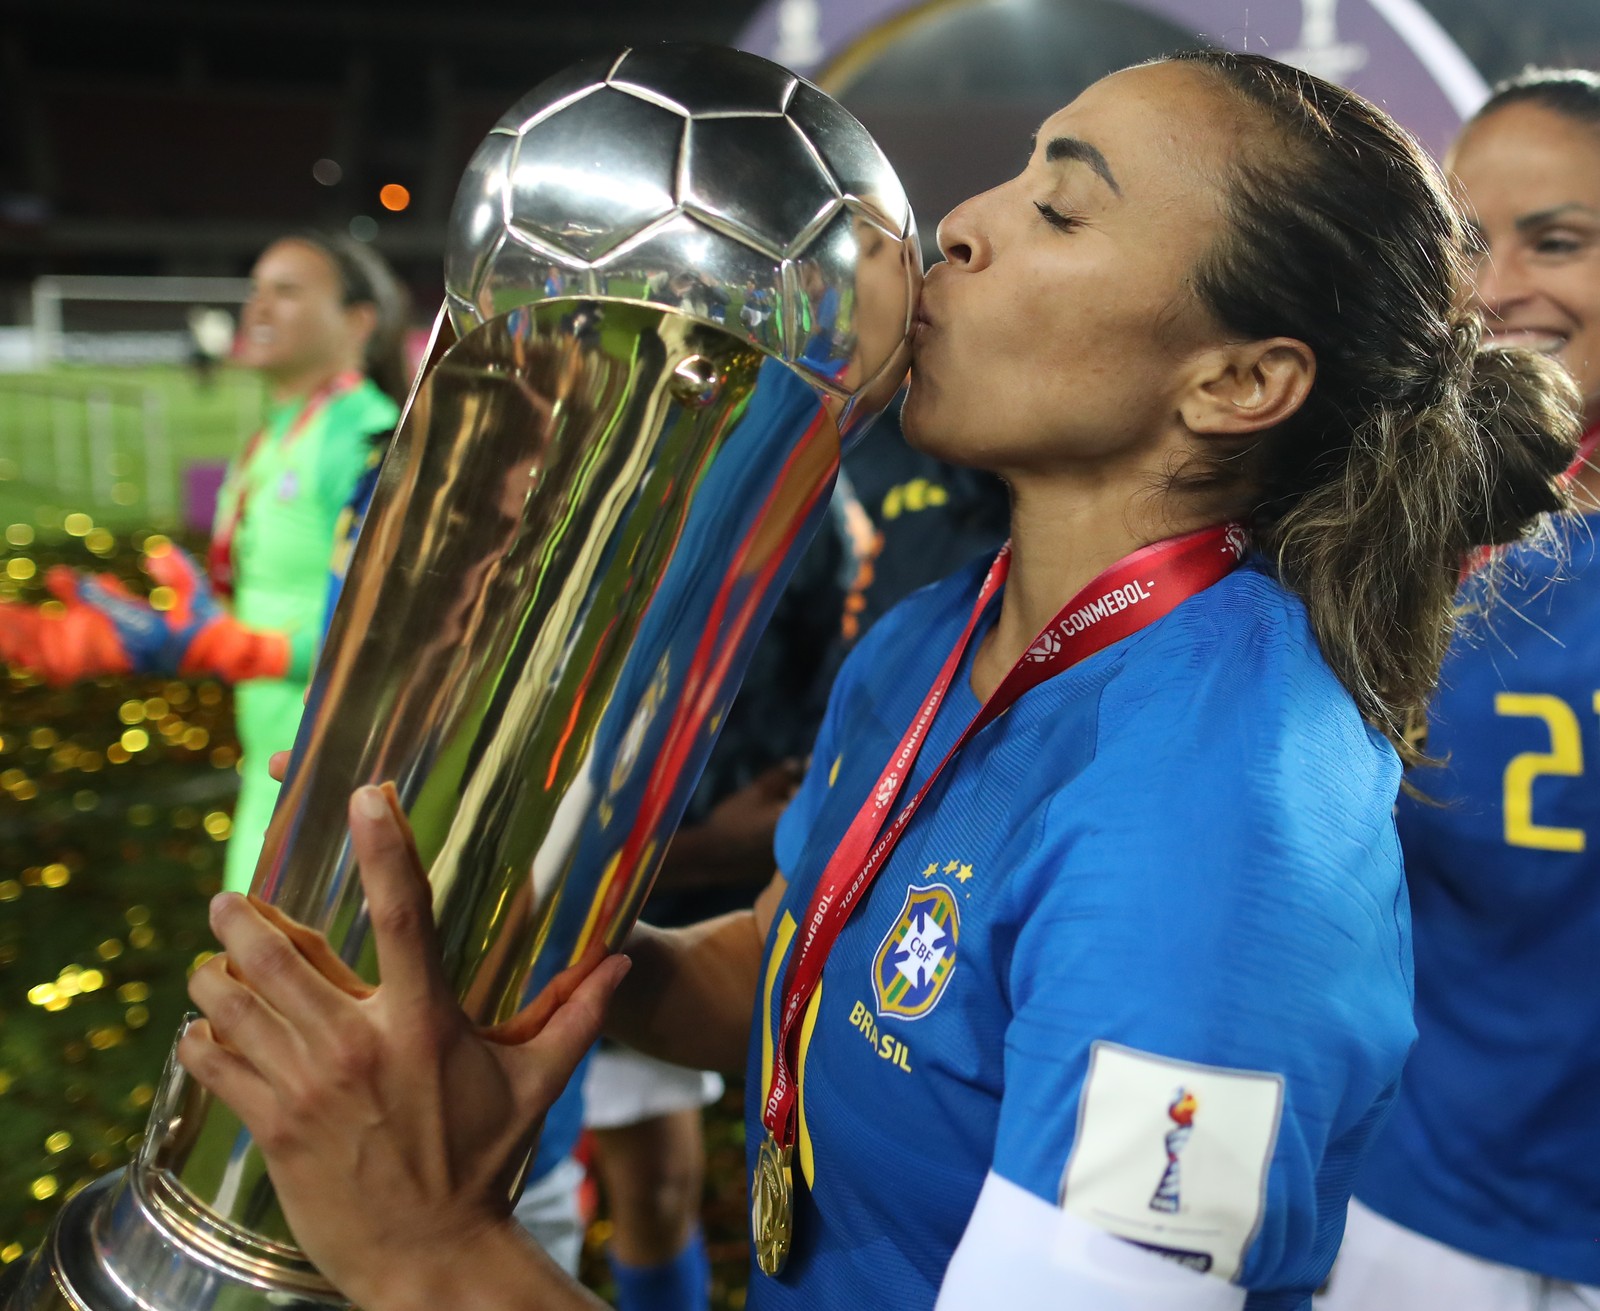 “Diziam que futebol não é para mulher”: grandes nomes do esporte destacam desigualdade